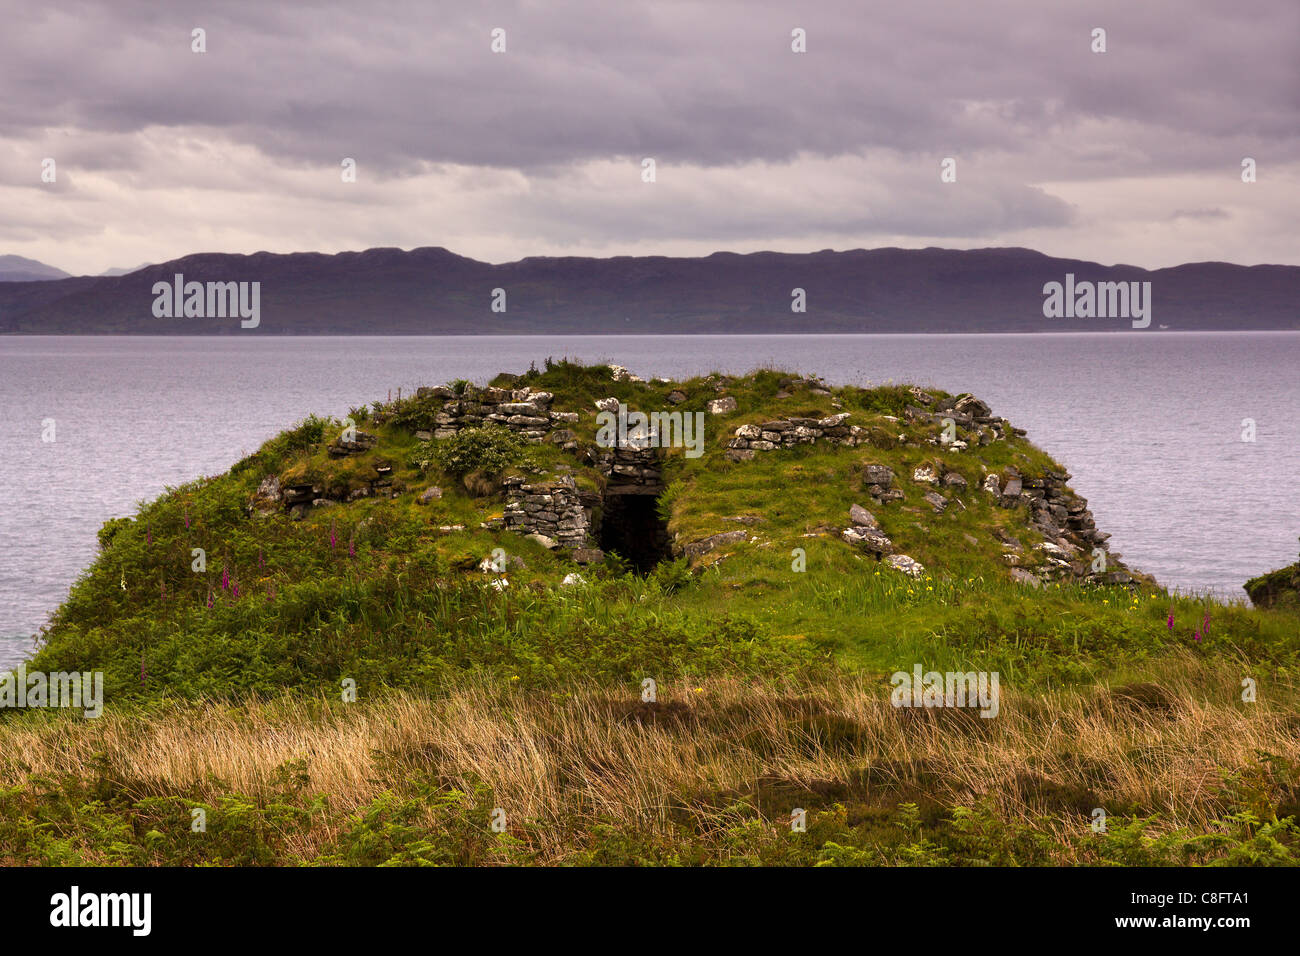 Ruin of Dun Ringill iron age hill fort on a promontory overlooking Loch Slapin, Kilmarie, Isle of Skye, Scotland, UK Stock Photo